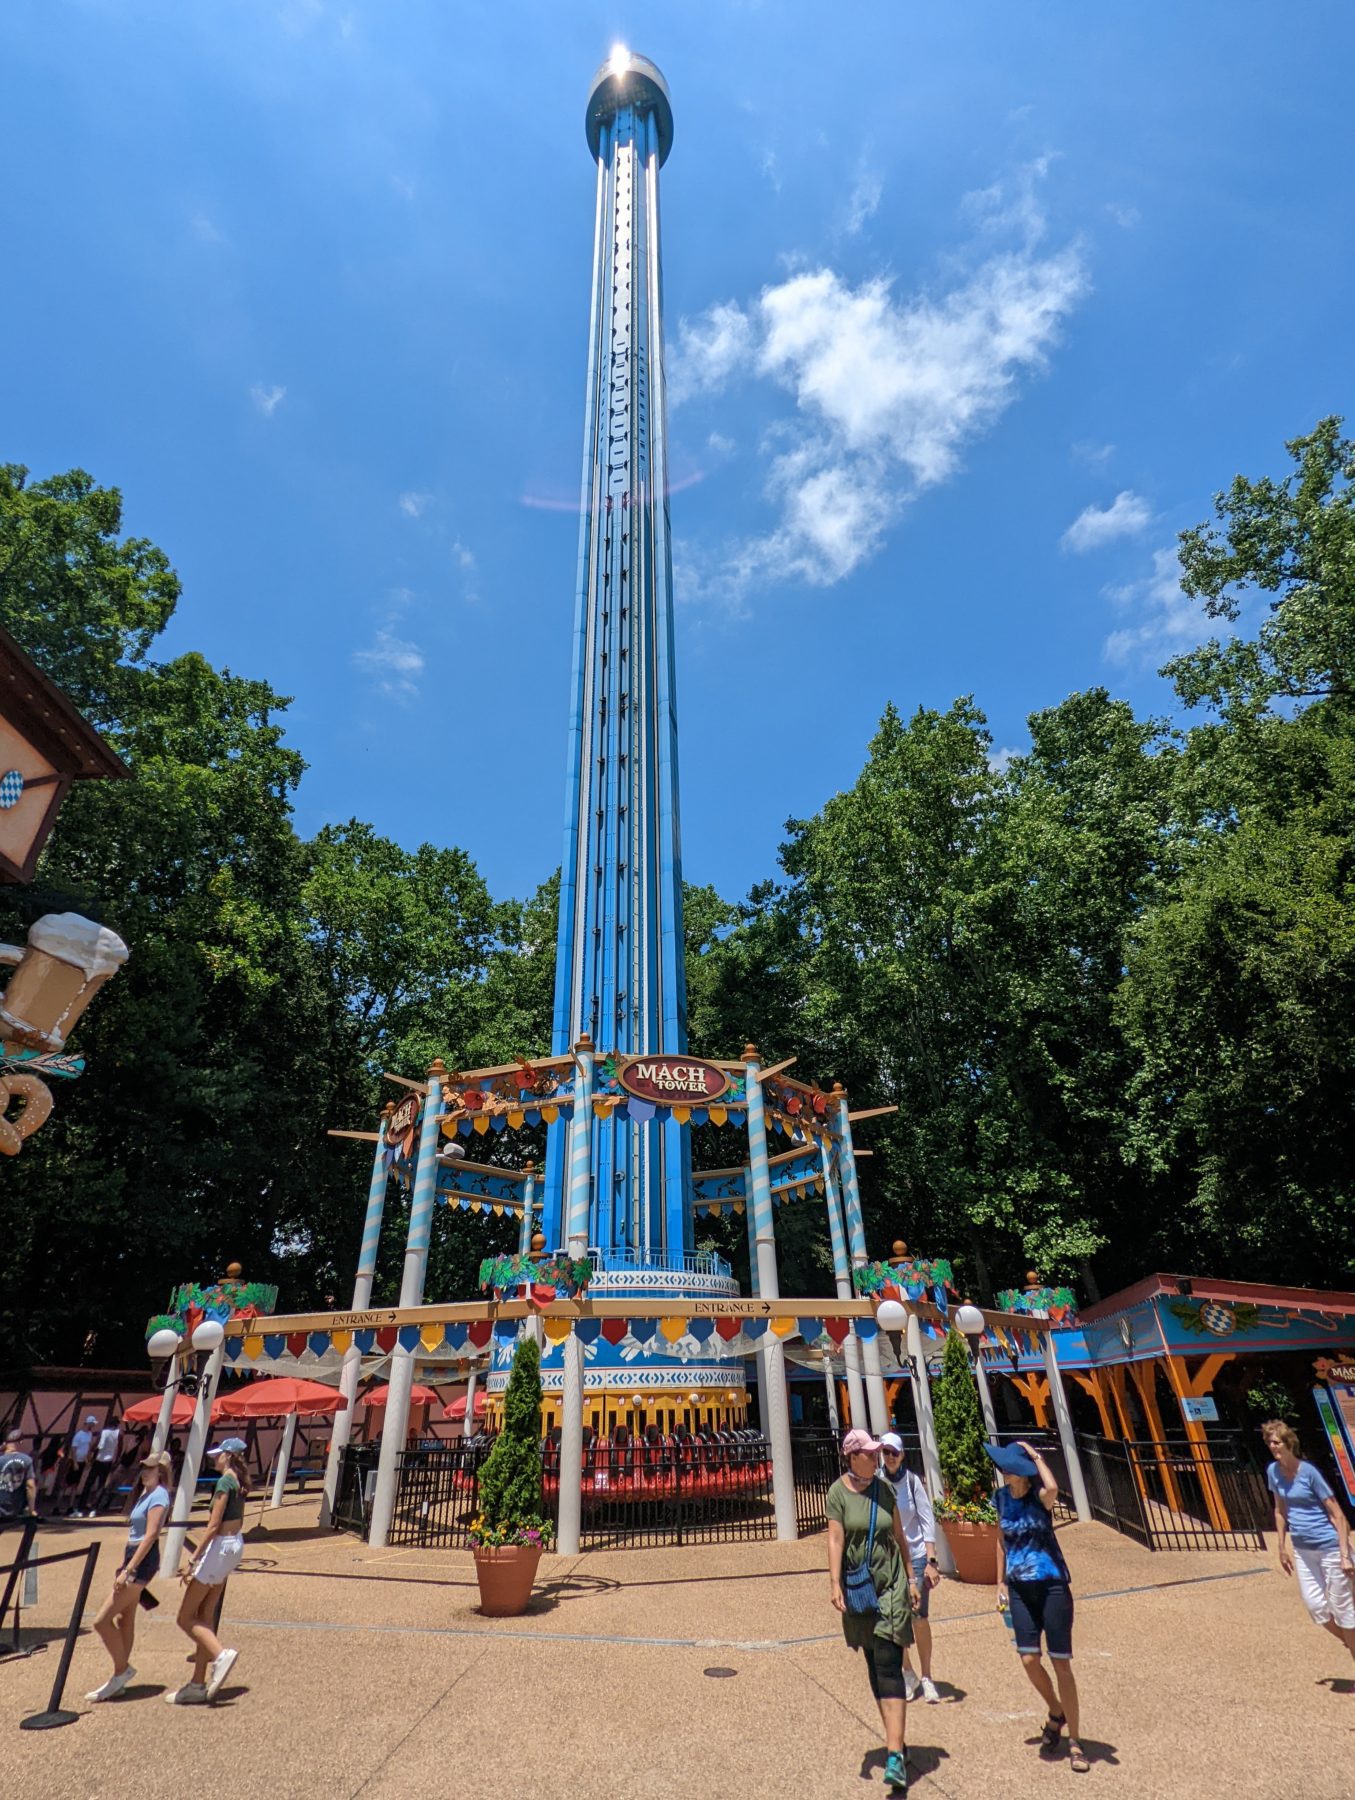 Mach Tower at Busch Gardens